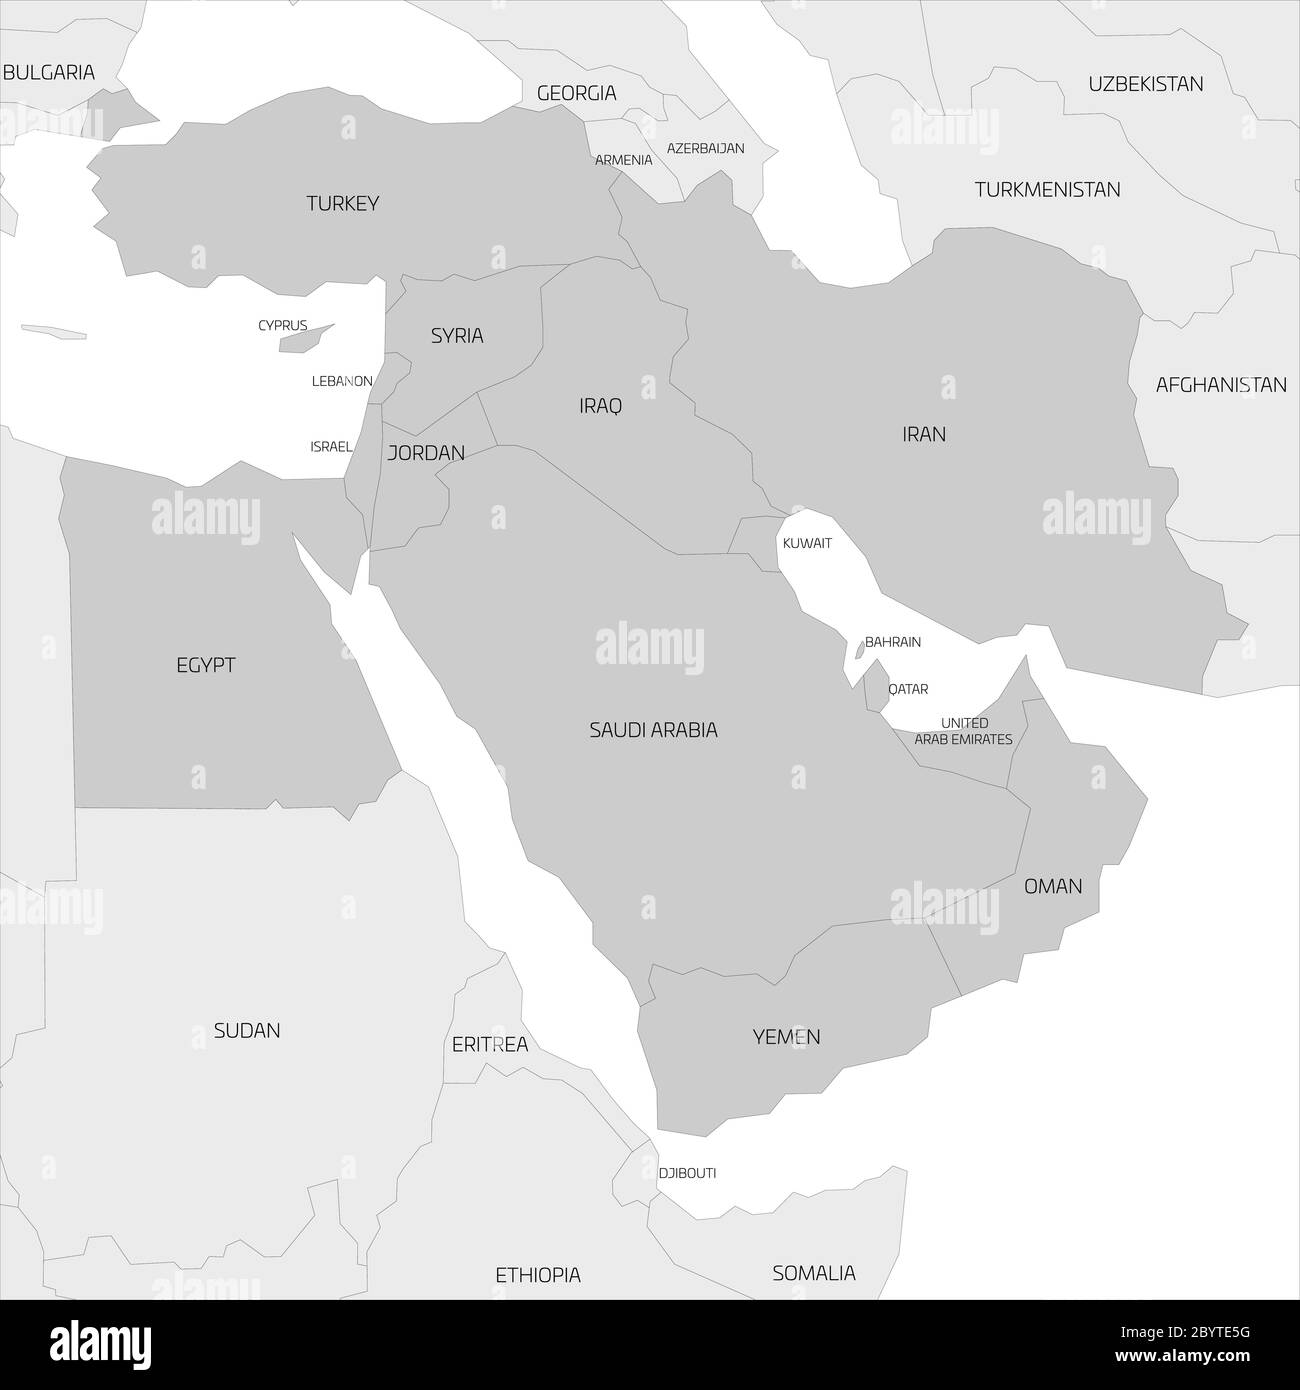 Carte de la région transcontinentale du Moyen-Orient ou du proche-Orient avec les pays d'Asie occidentale mis en évidence, la Turquie, Chypre et l'Égypte. Carte grise plate avec bordures noires de pays fines. Illustration de Vecteur